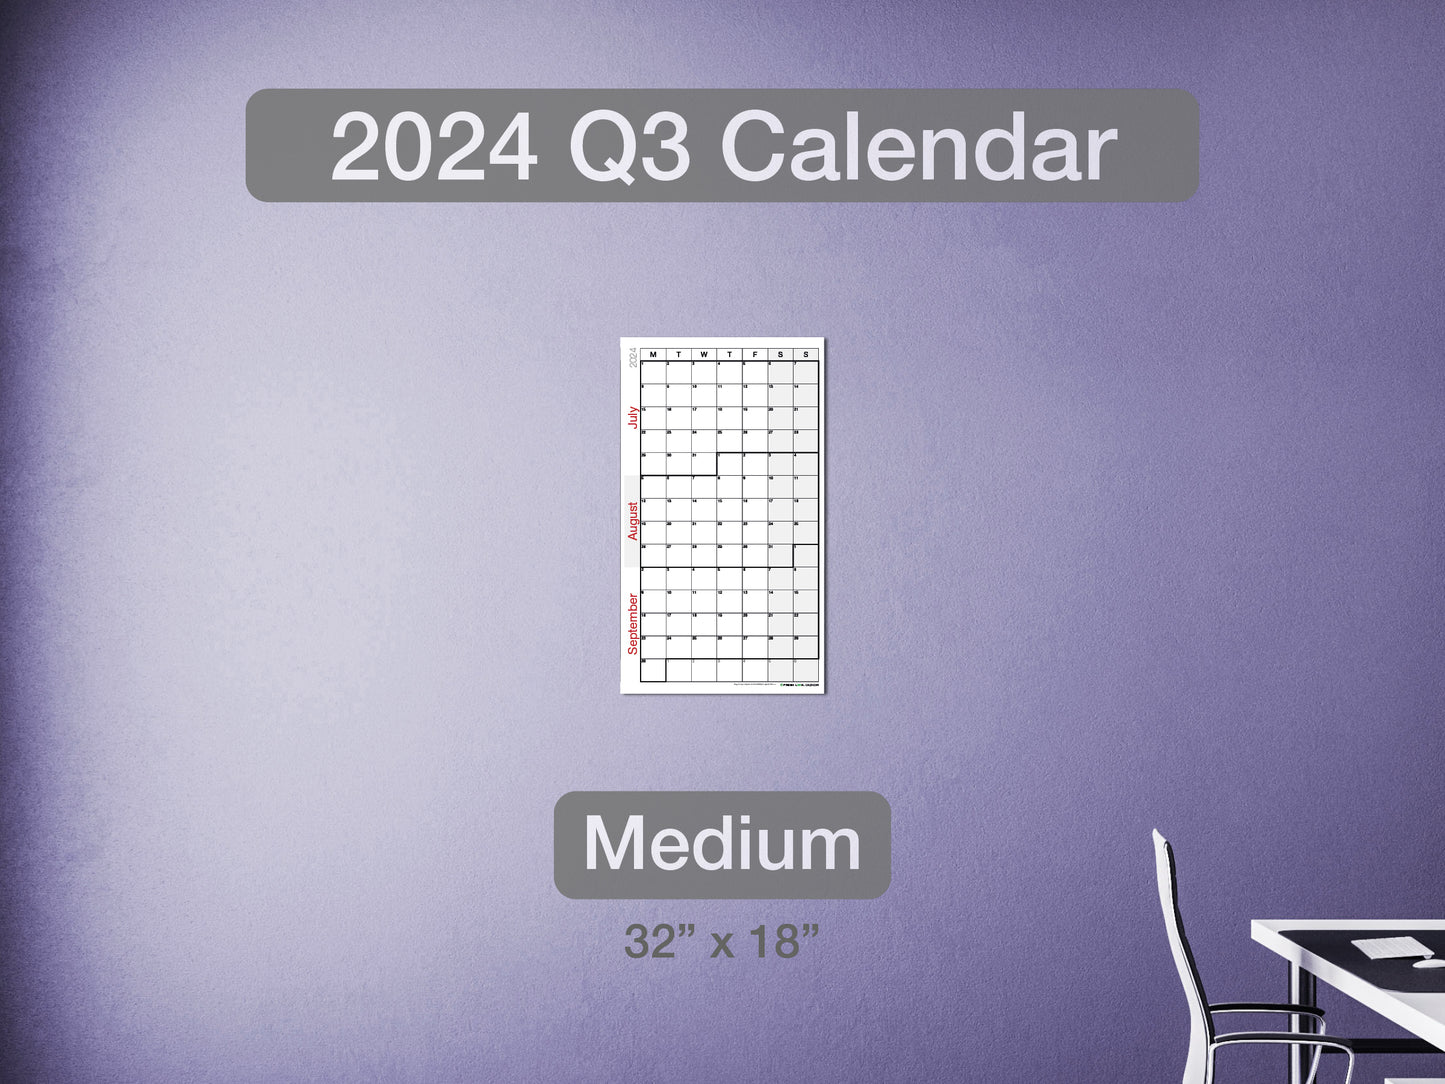 2024 Q3 Calendar Medium